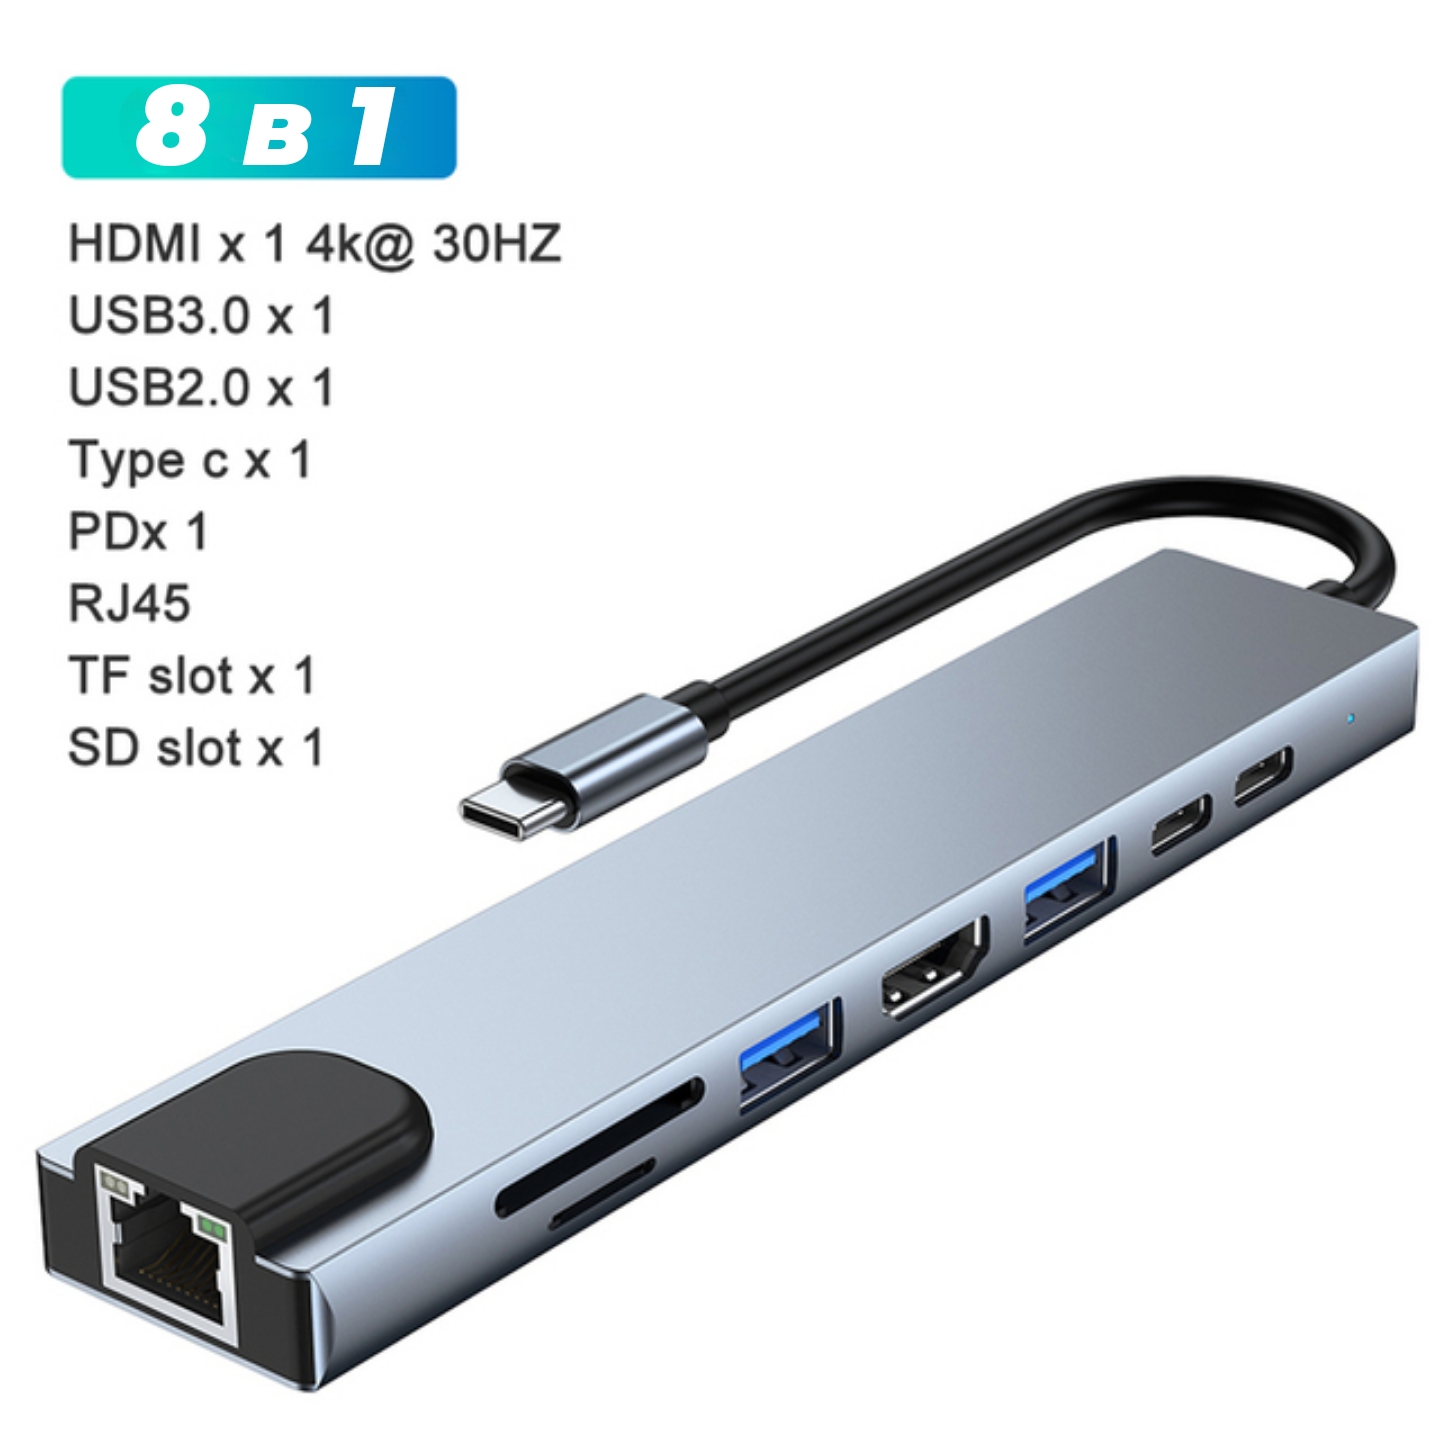 USB хаб IMICE 8in1, купить в Москве, цены в интернет-магазинах на Мегамаркет